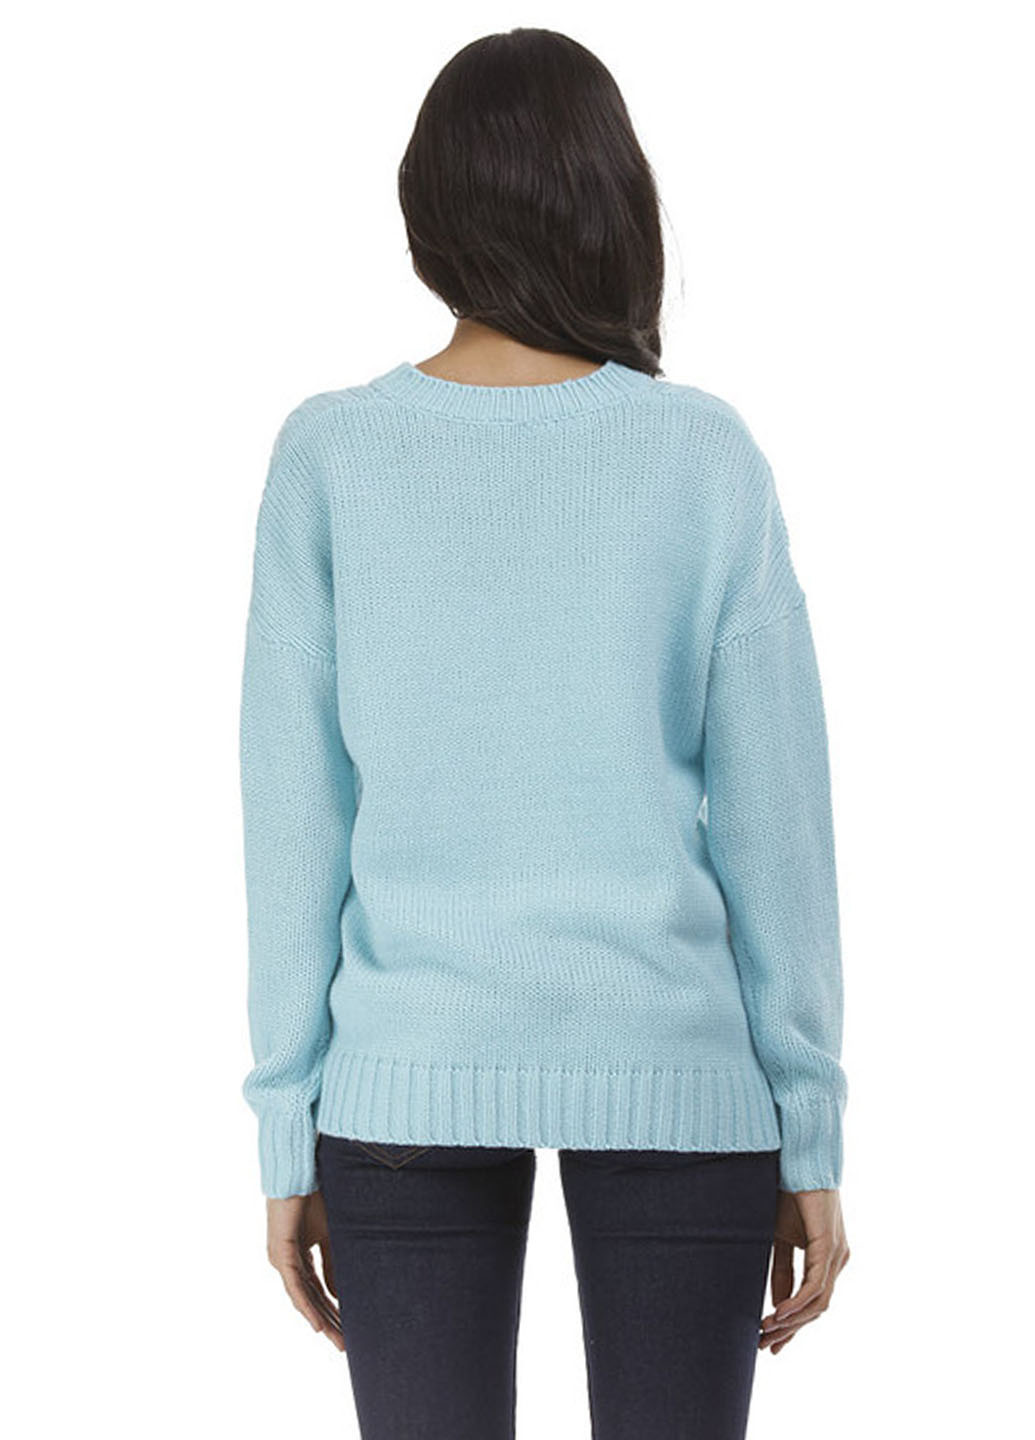 Голубой демисезонный пуловер пуловер Яavin